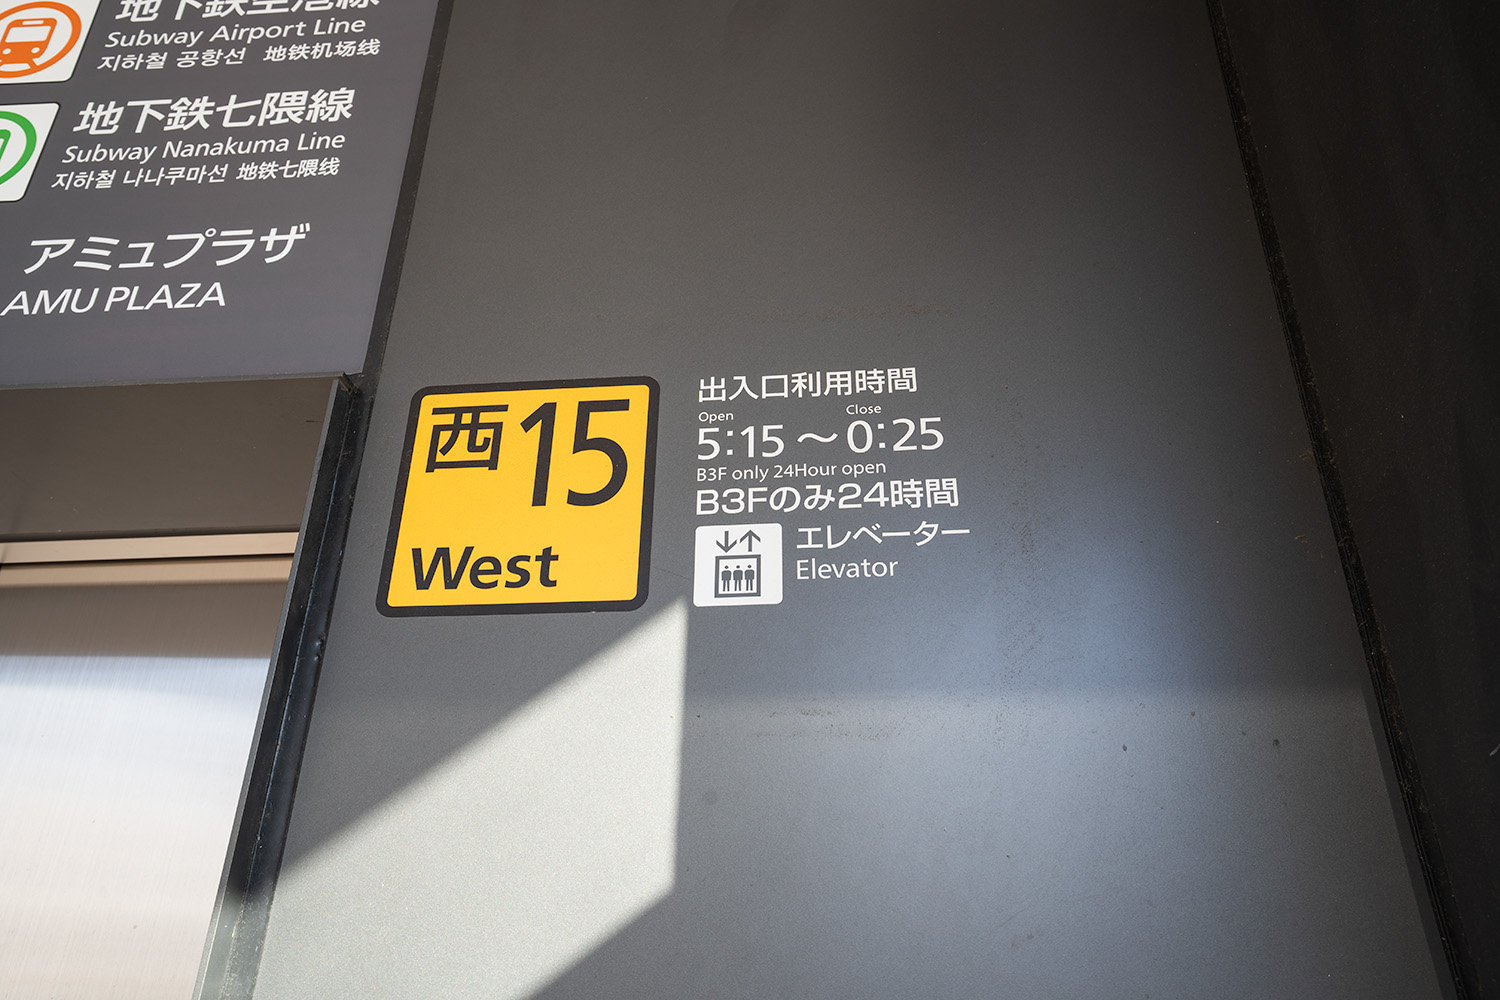 博多口 駅前広場のエレベーターの運行時間